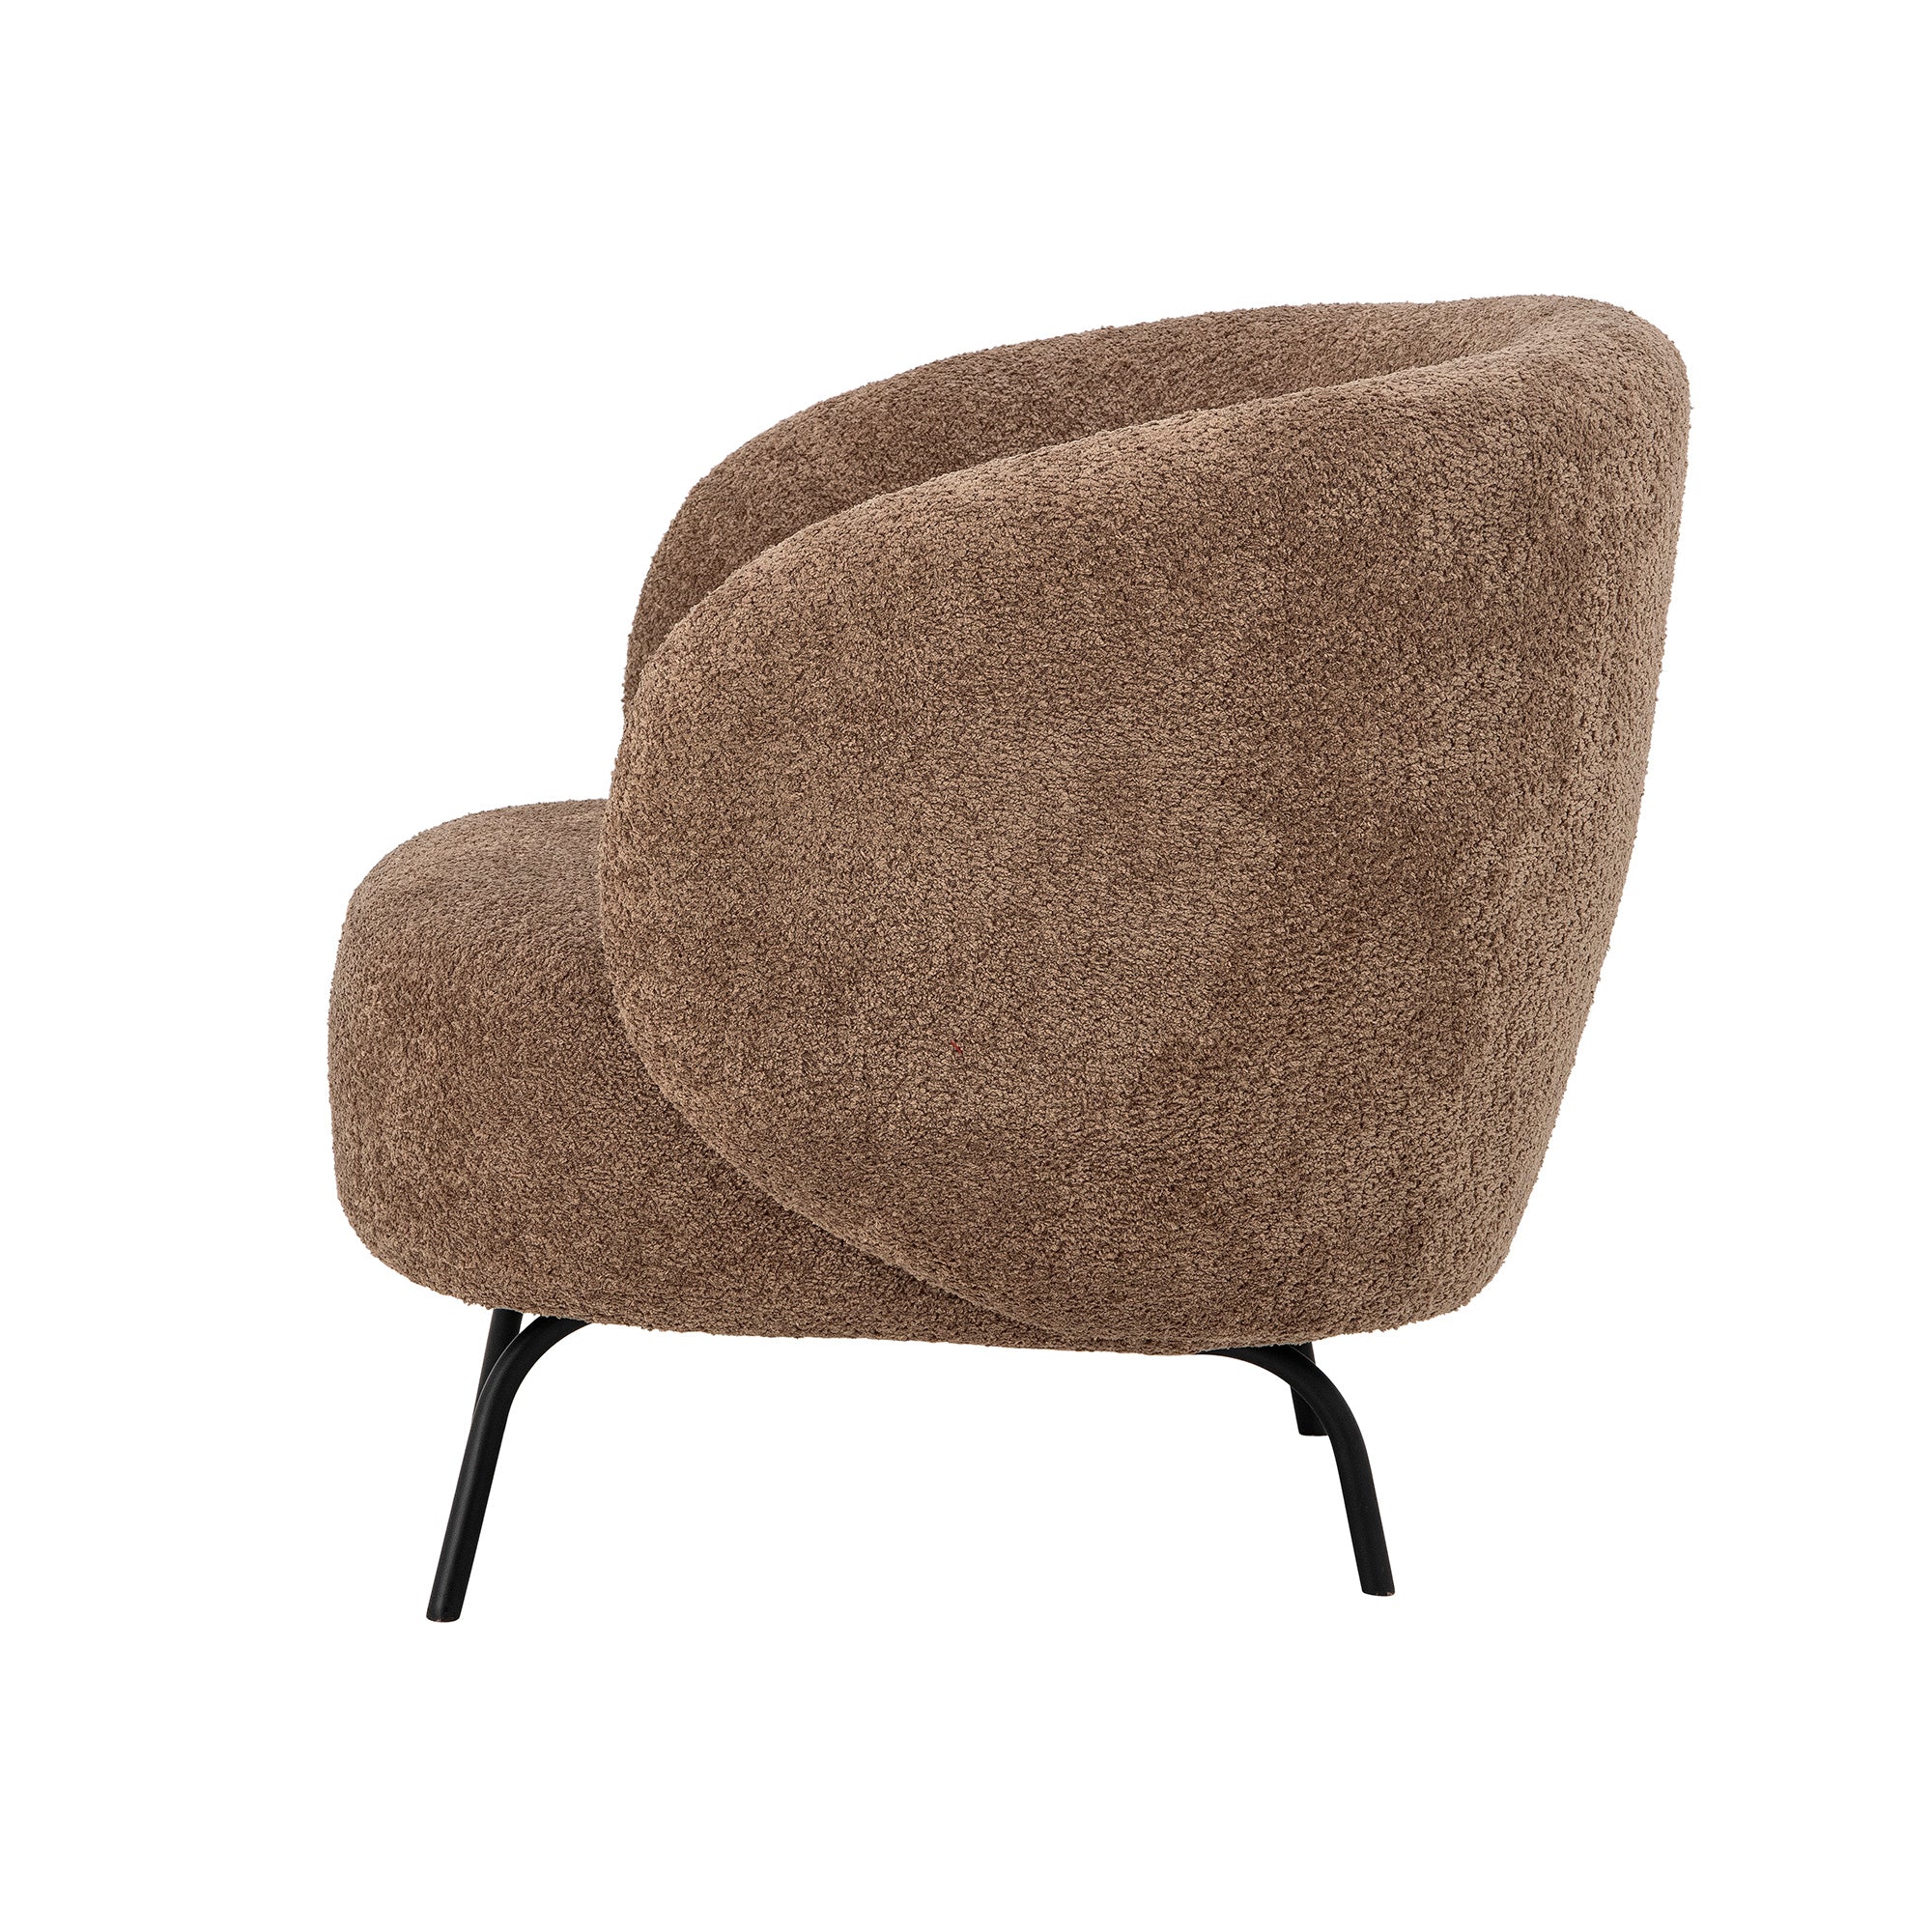 Harry Loungesessel, Braun, Polyester in Brown präsentiert im Onlineshop von KAQTU Design AG. Sessel ist von Bloomingville